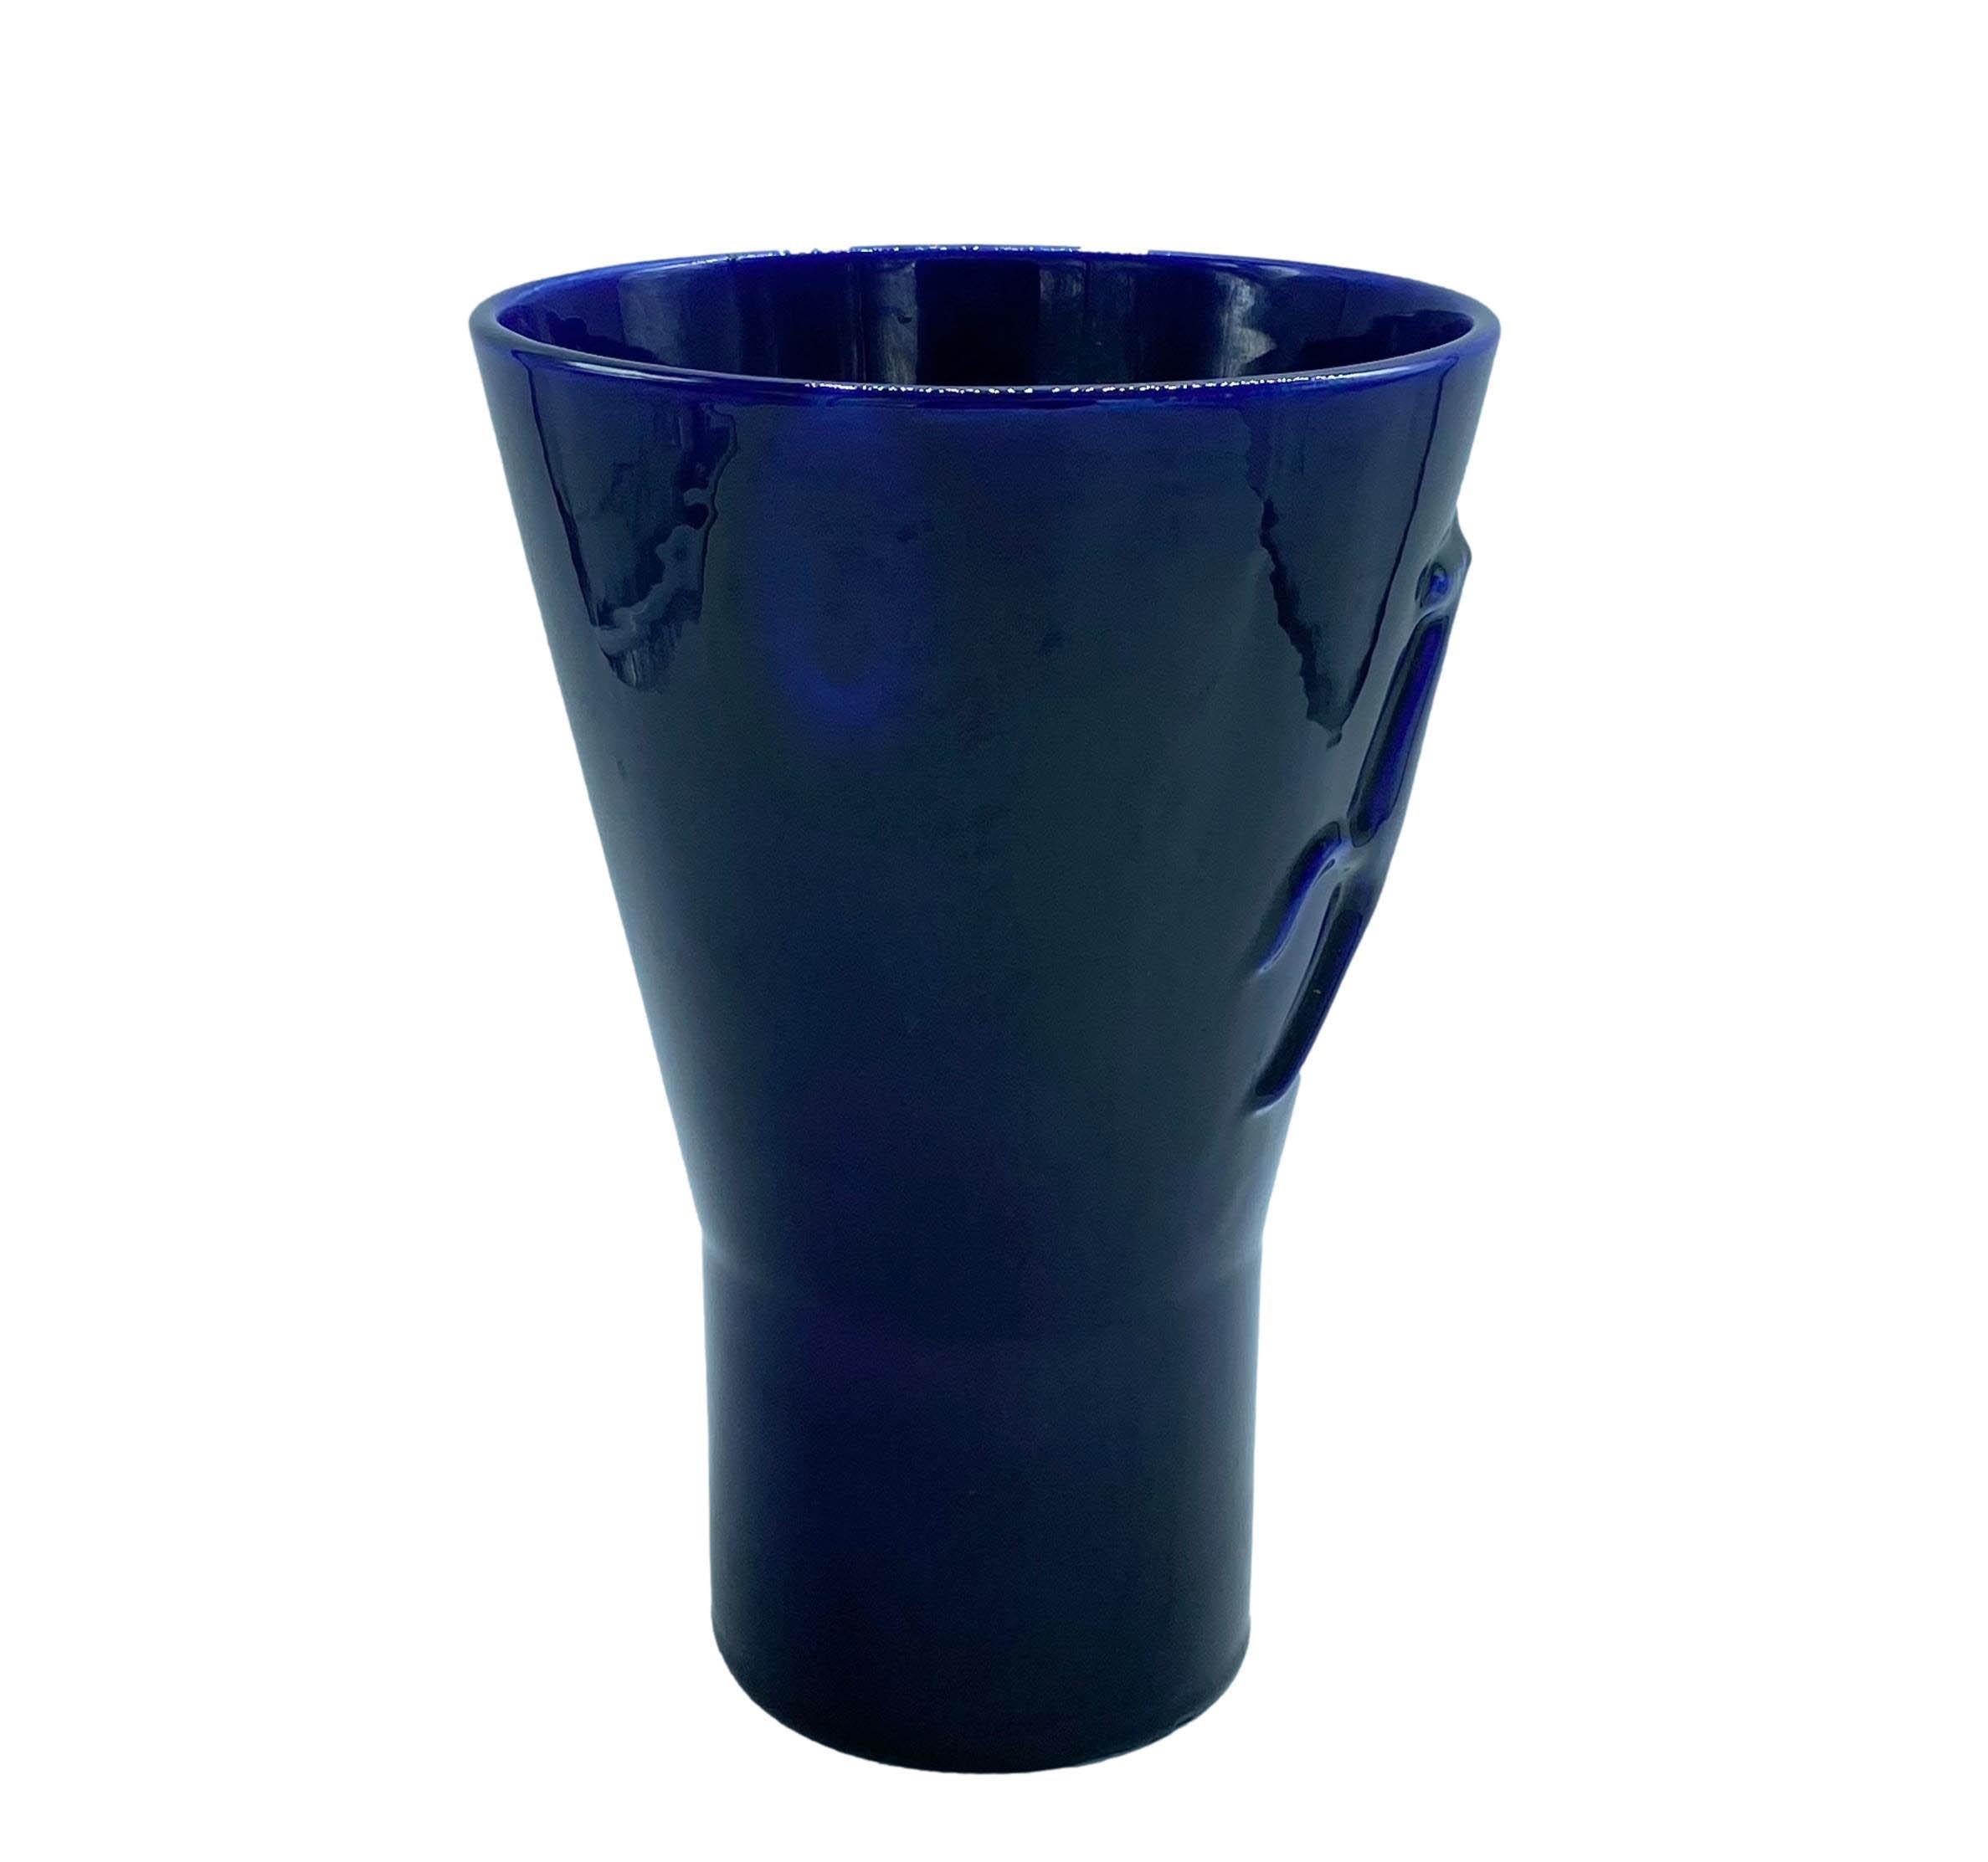 Italian Angelo Biancini for Laveno Blue Ceramic Vase, Italy 1930s